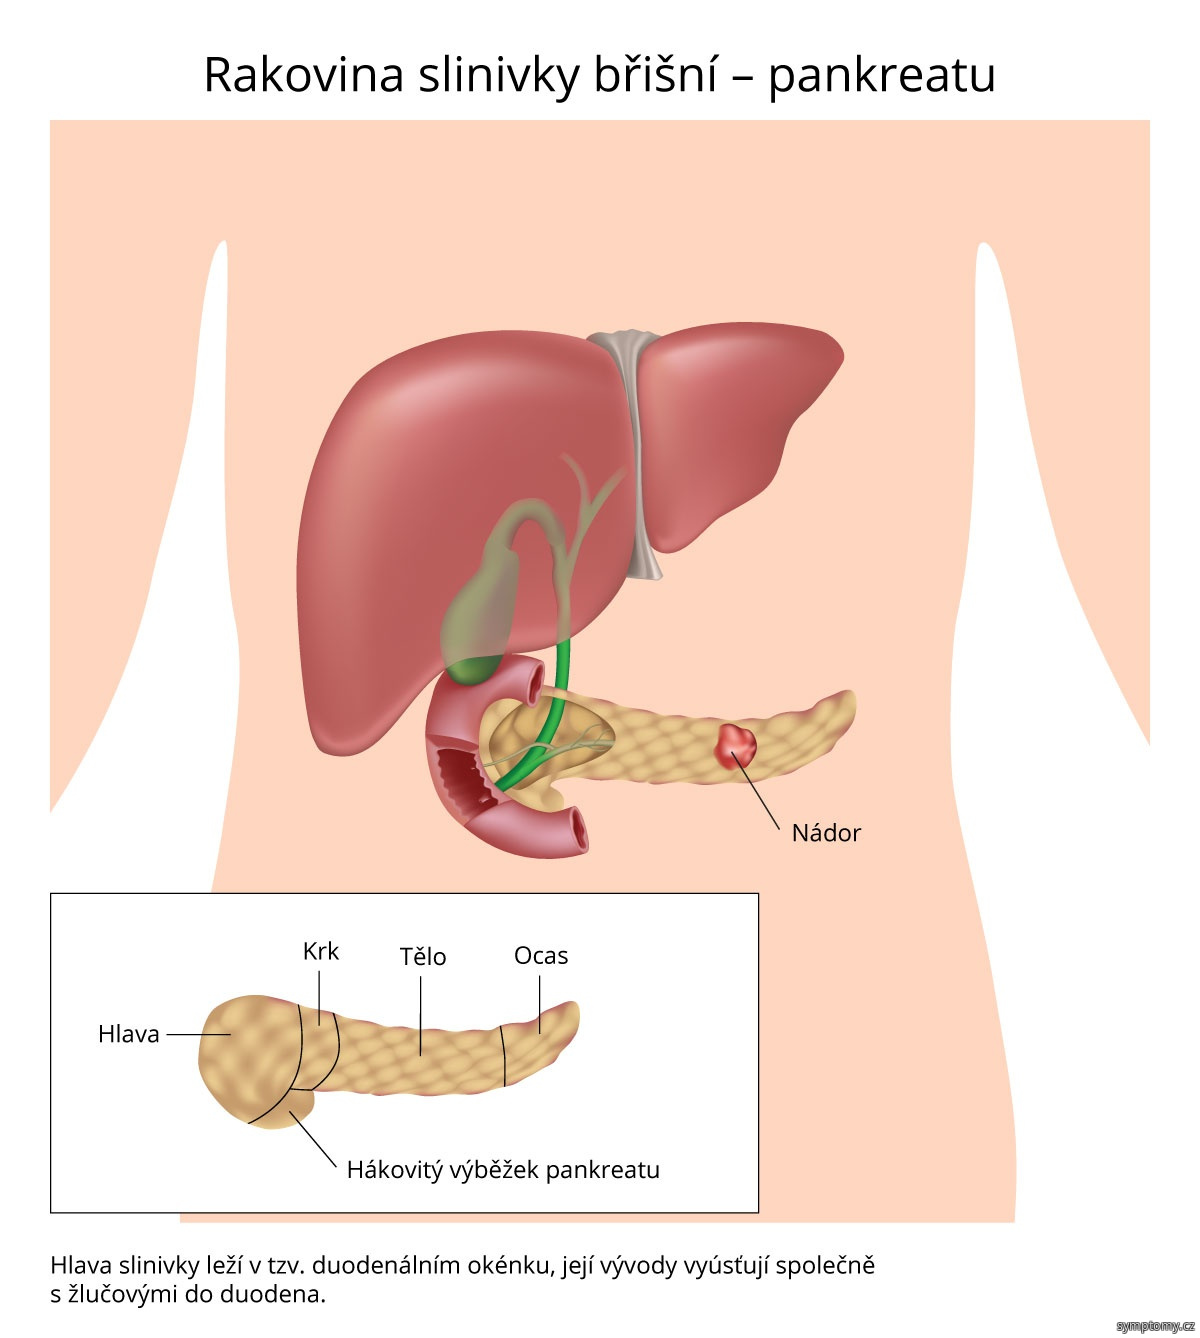 Rakovina slinivky břišní - pankreatu